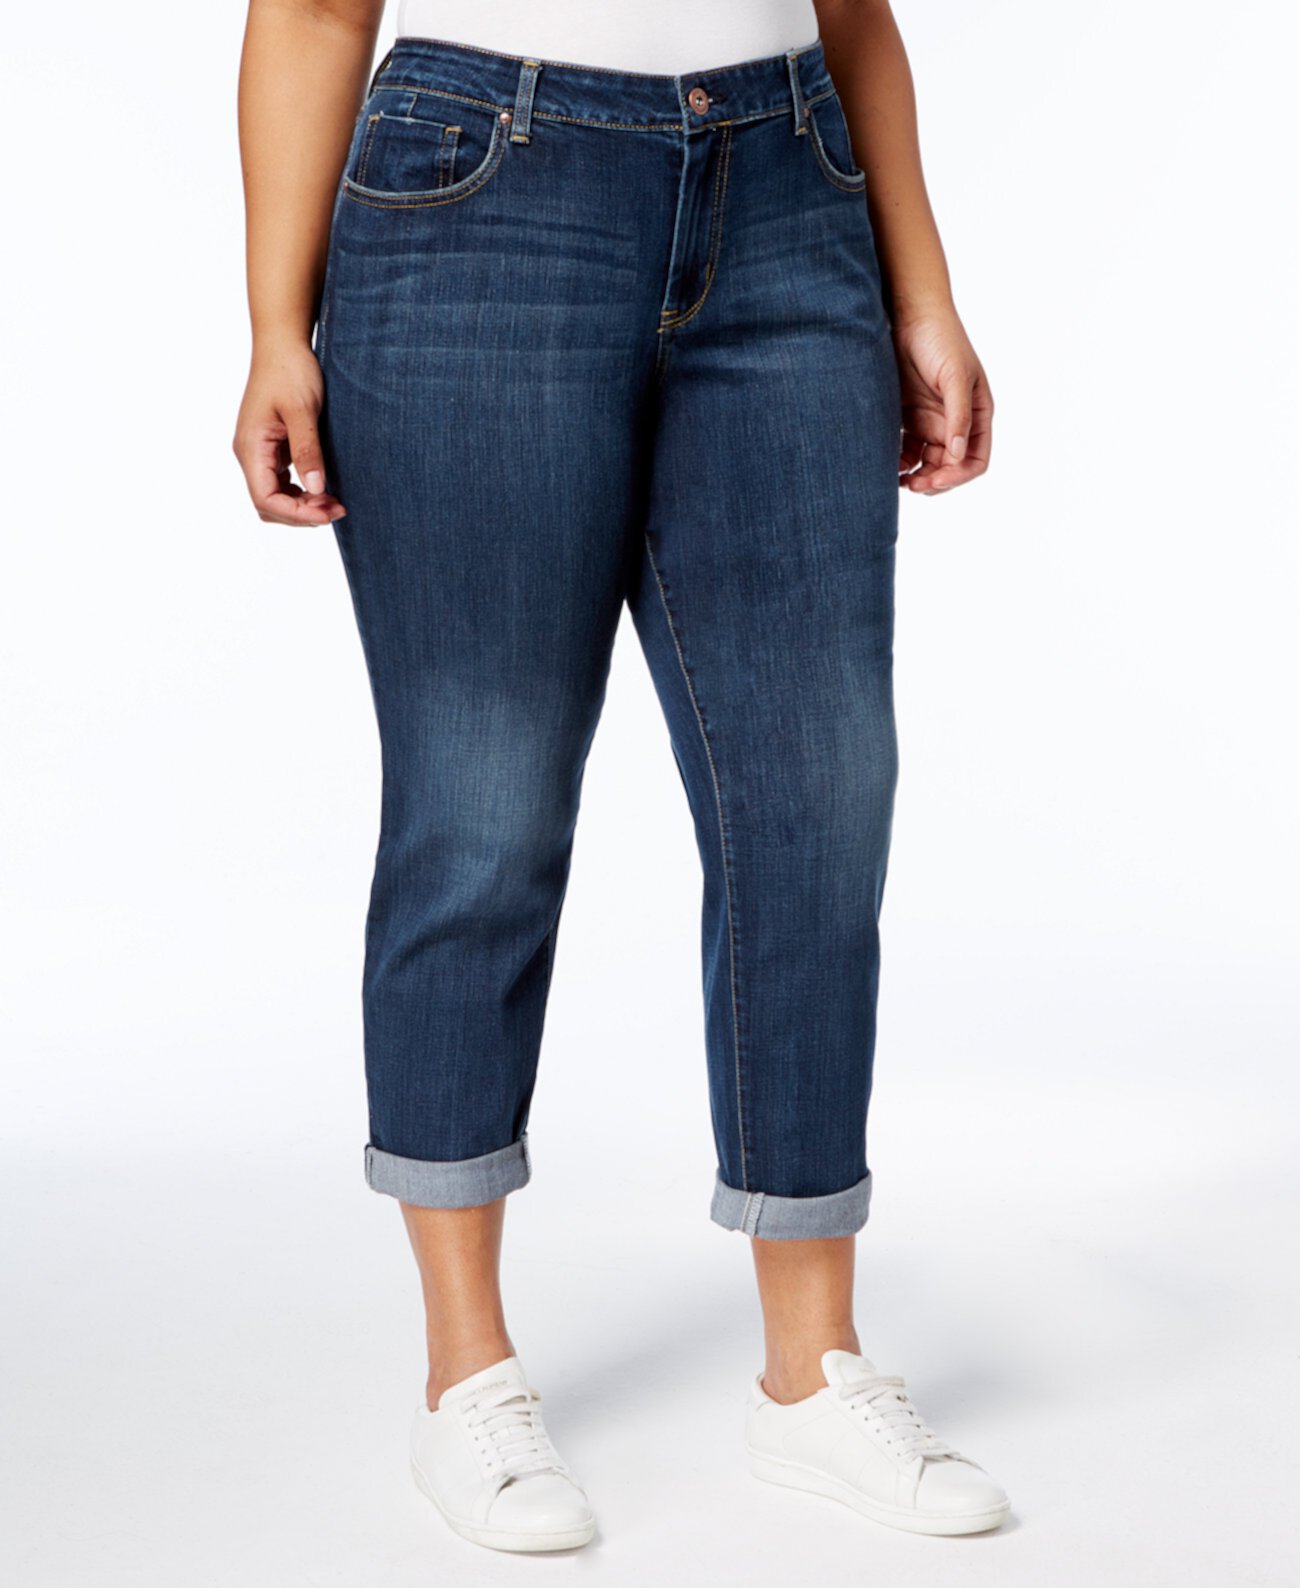 Модные джинсы скинни больших размеров Mika Best Friend Jessica Simpson